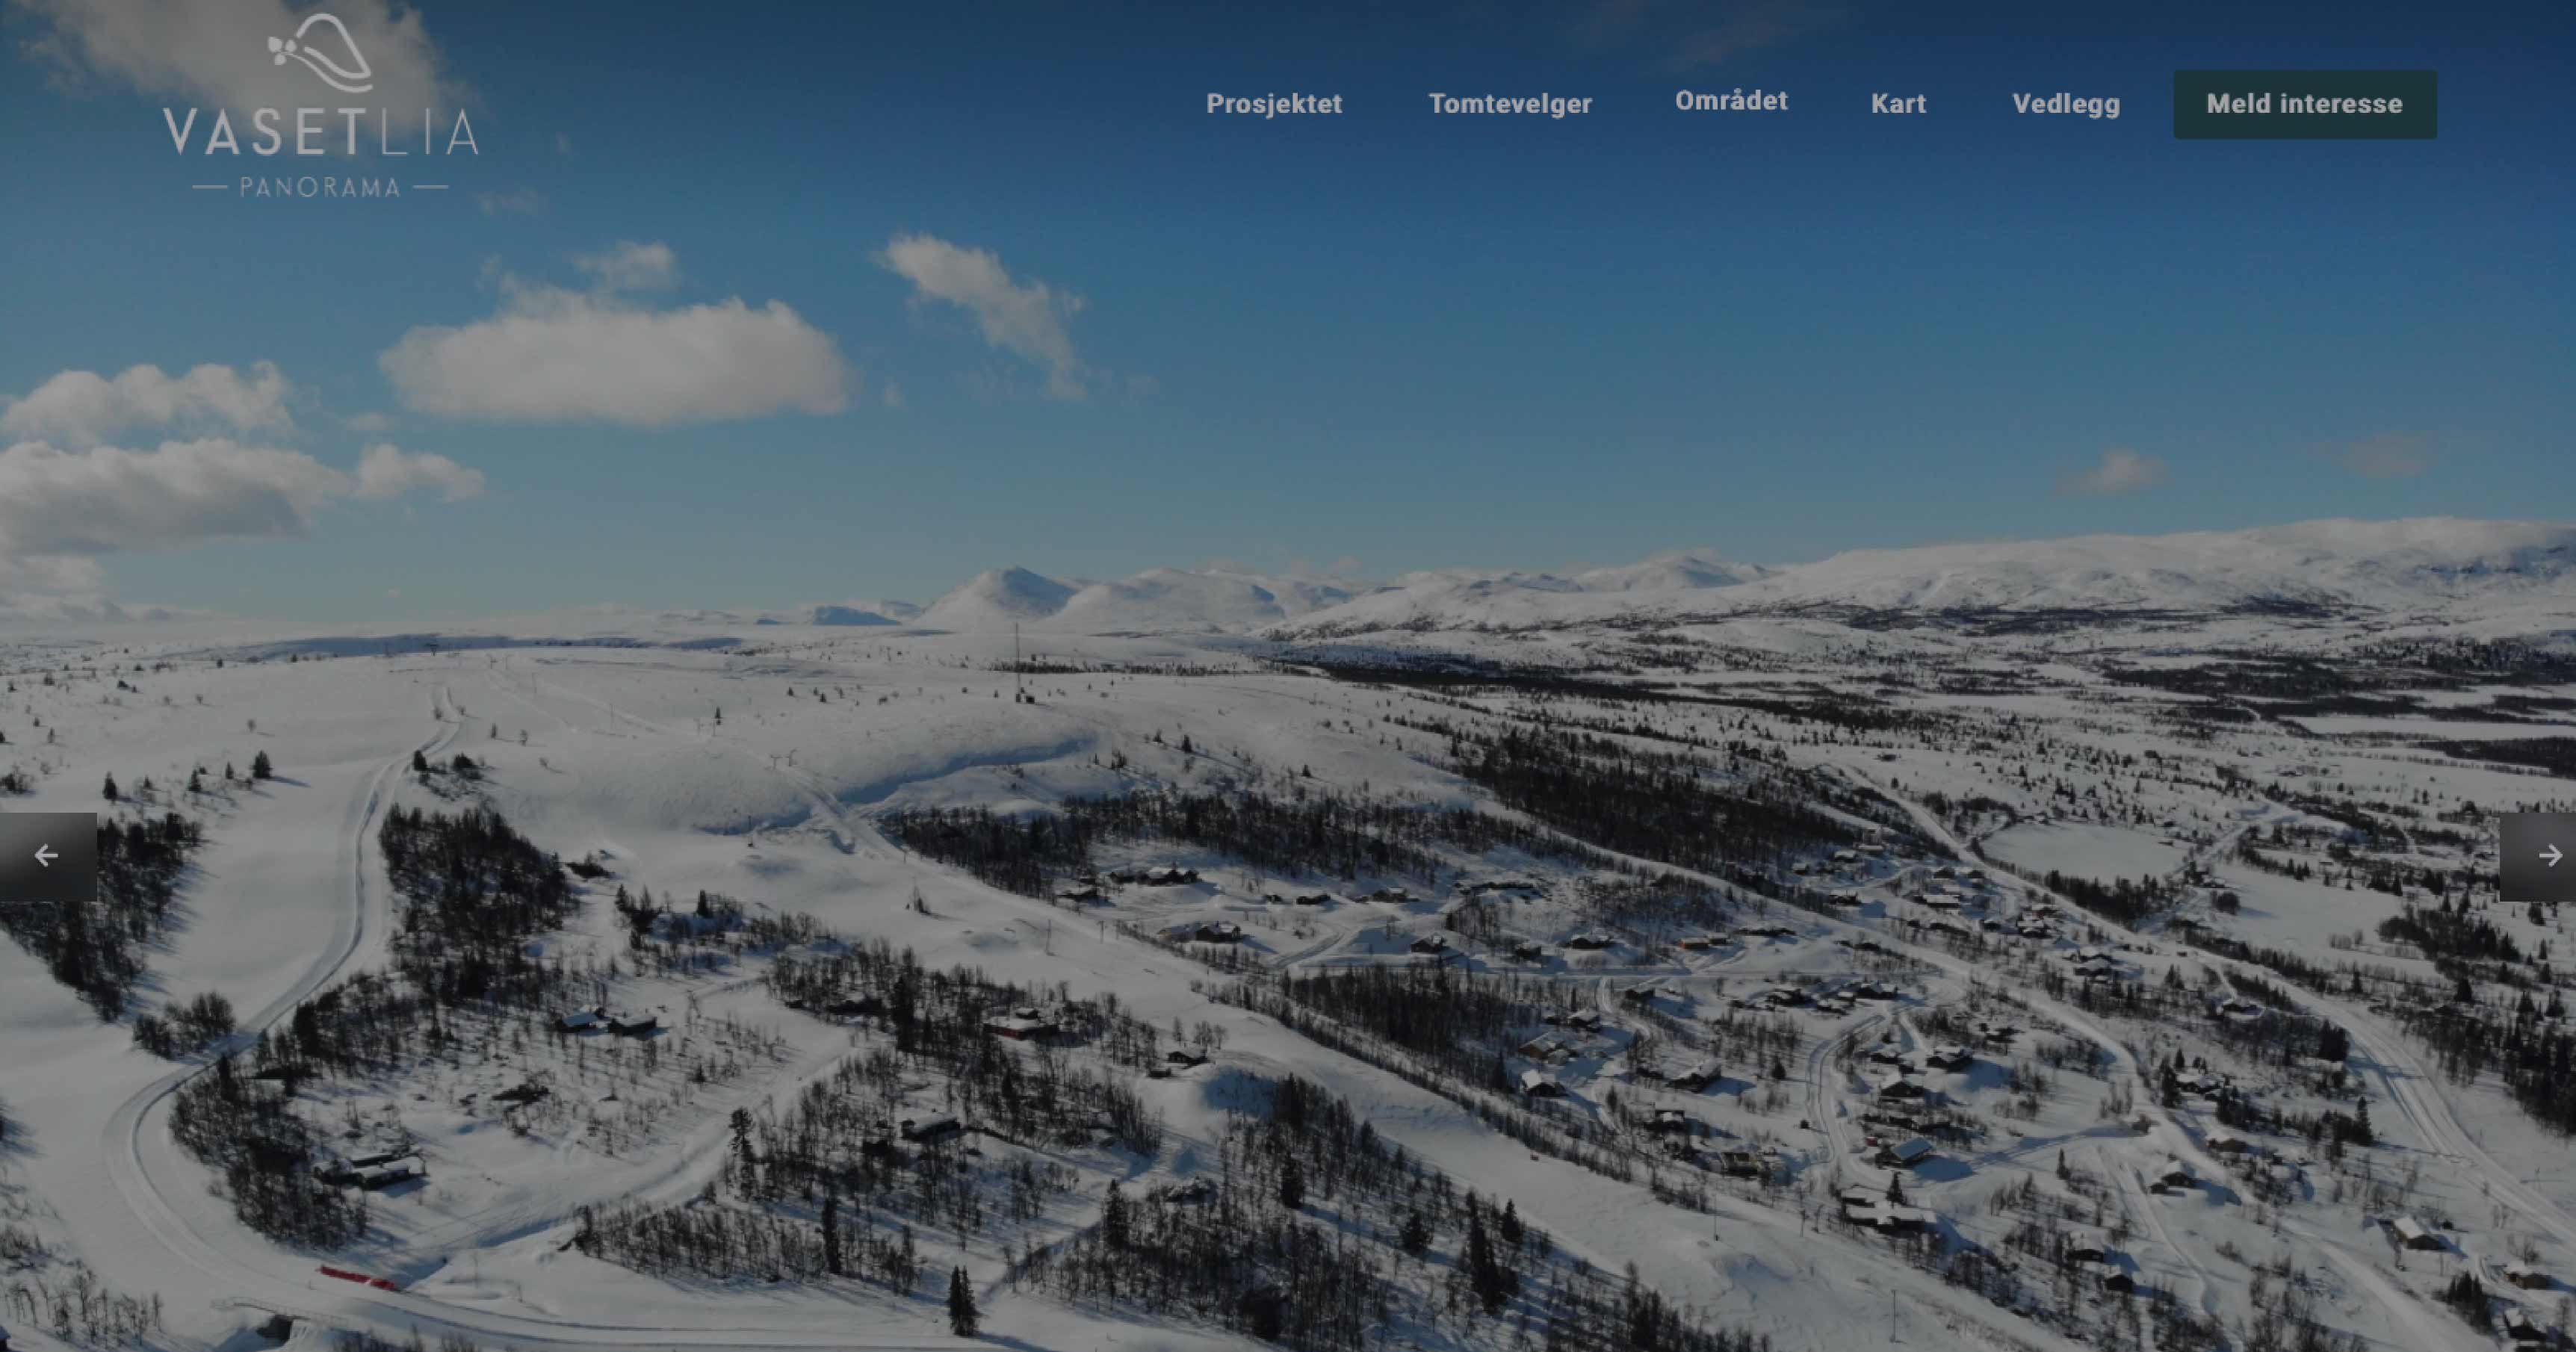 Vasetlia skjermdump av nettside, viser et vinterlandskap på fjellet med hytter og skiløyper